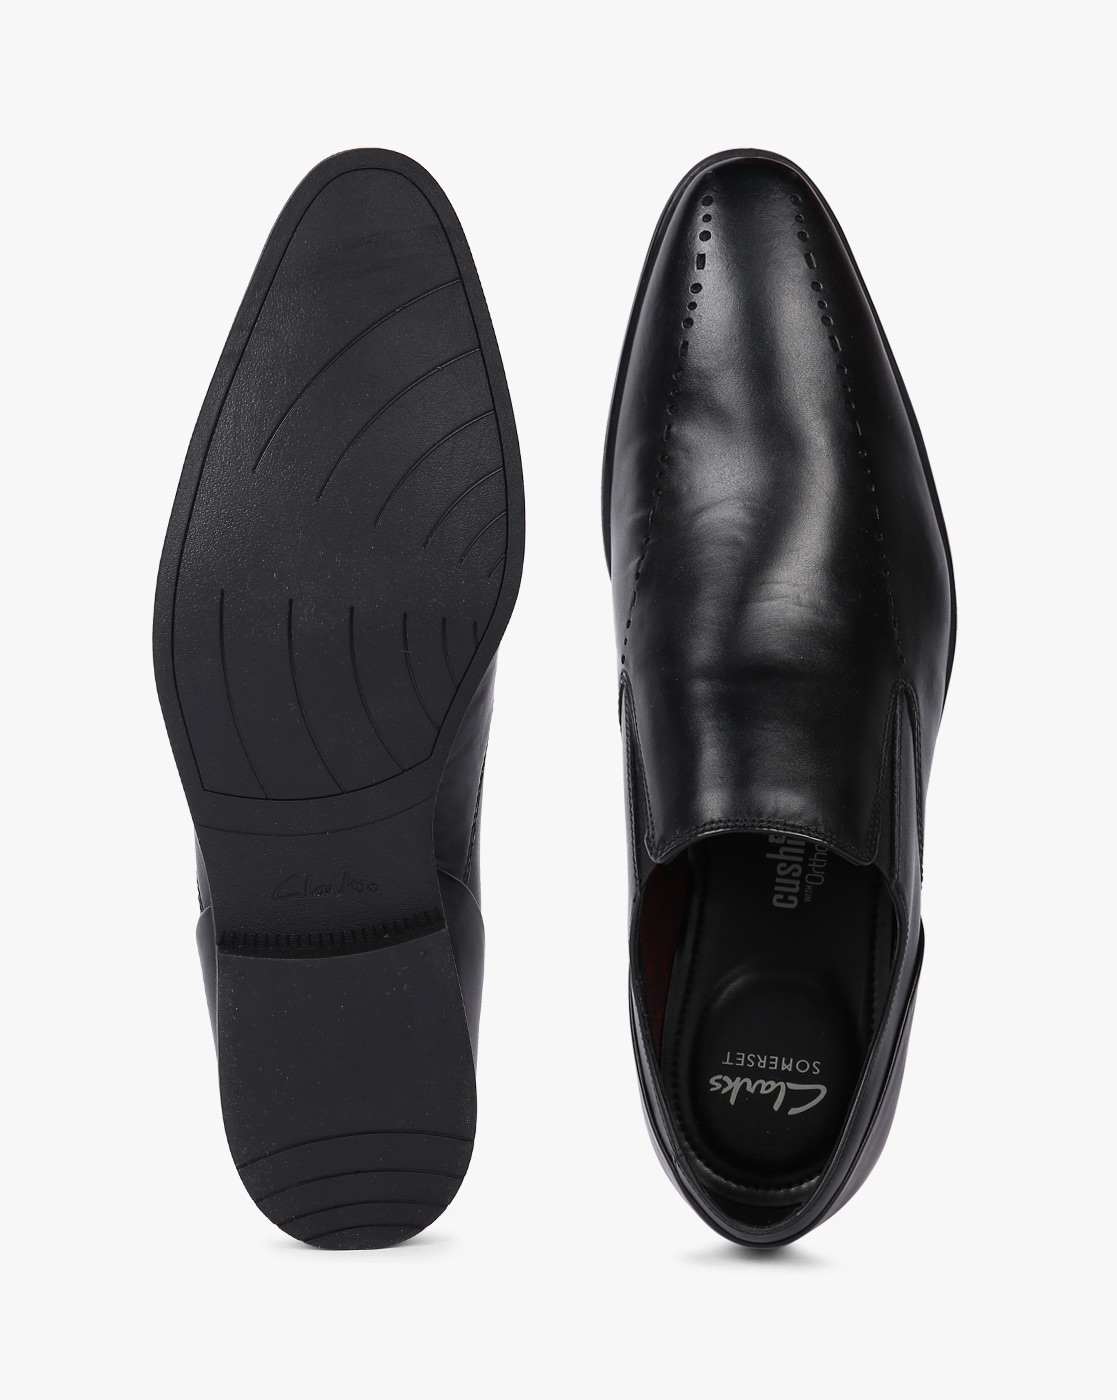 clarks formal black shoes